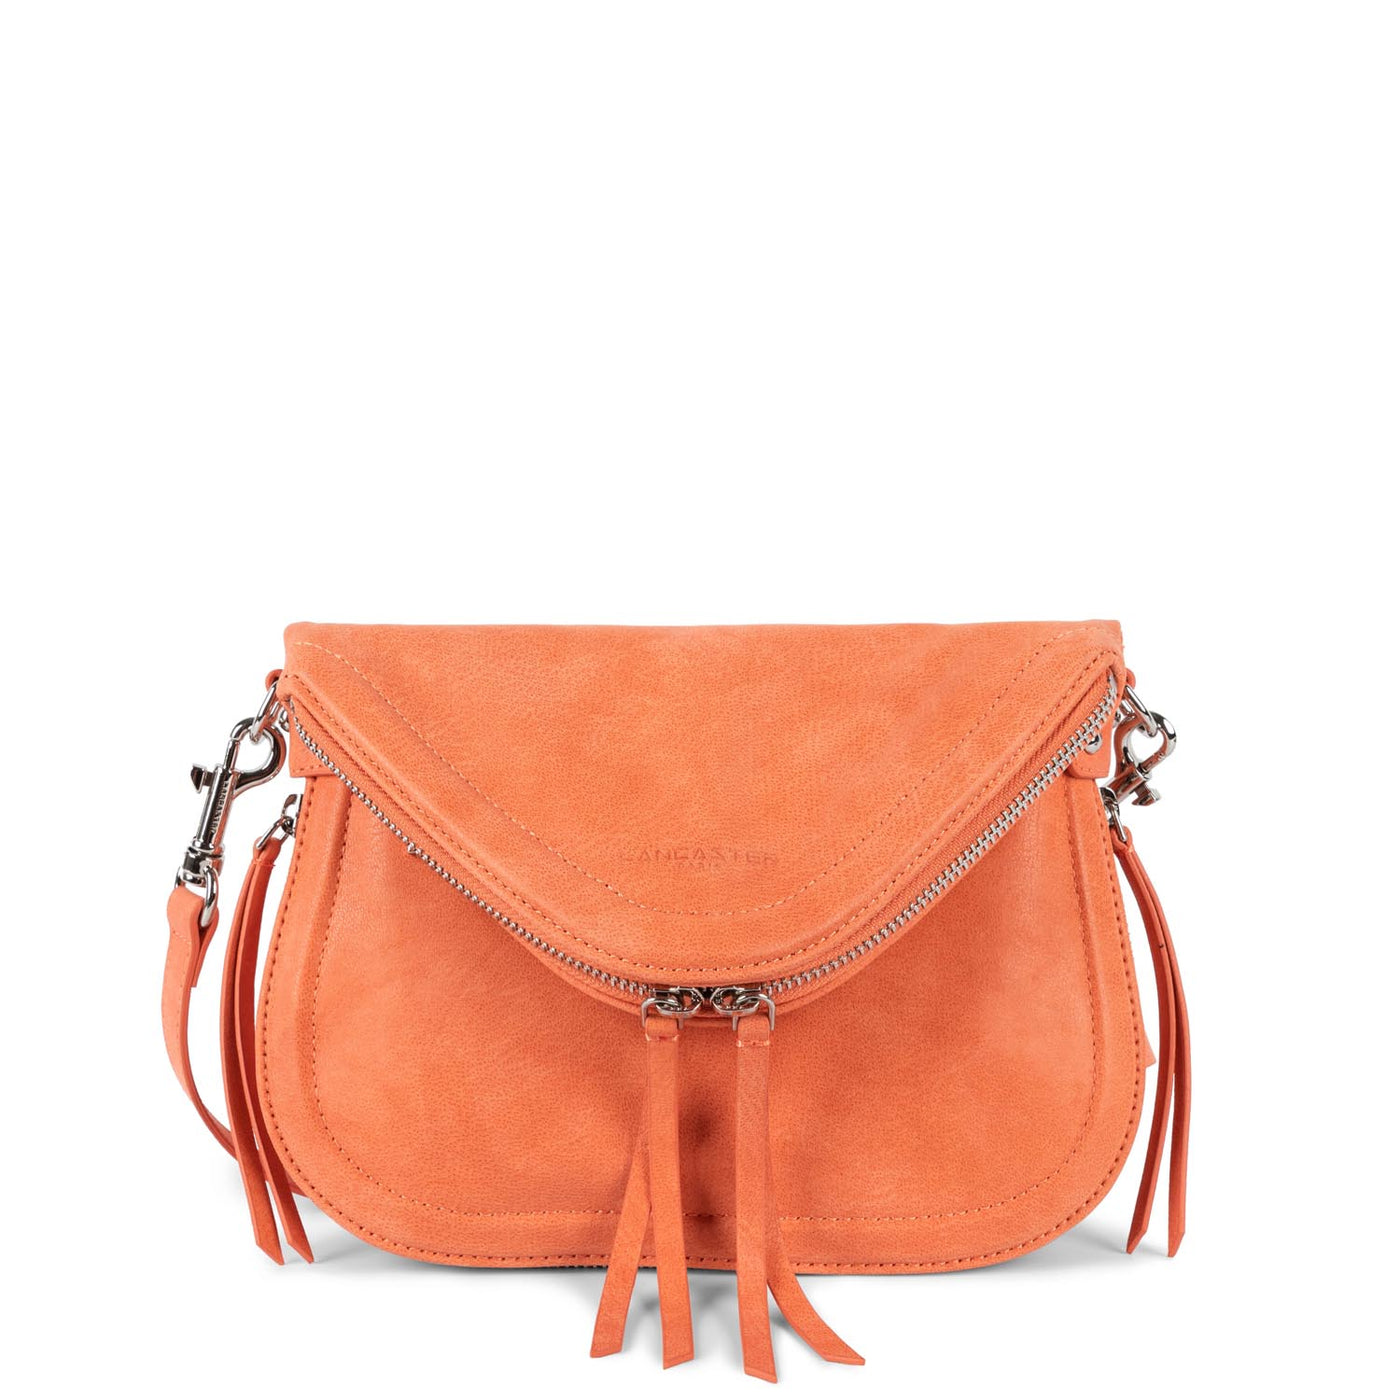 m shoulder bag - santa fe lisi #couleur_orange